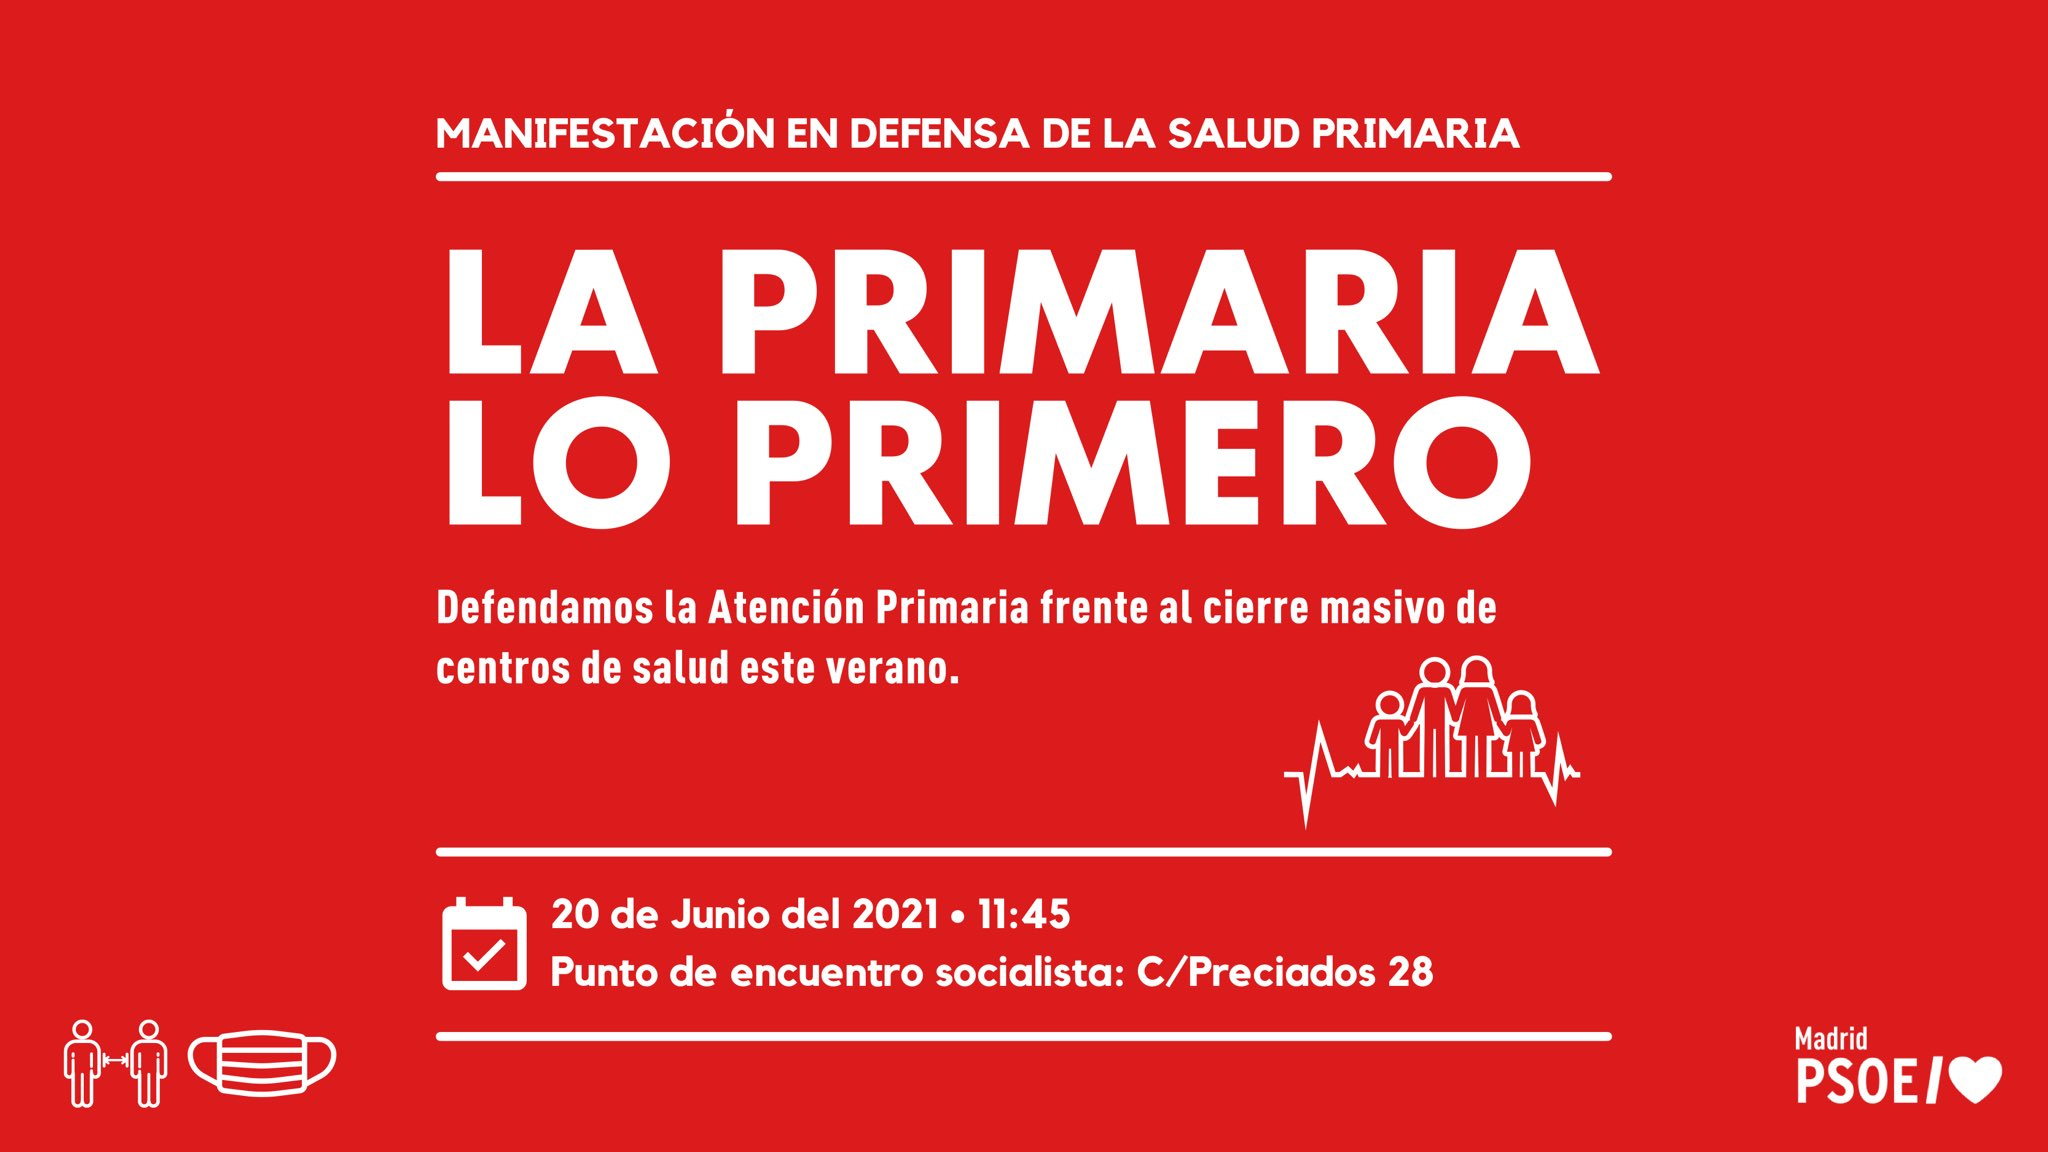 El PSOE-M se suma a la manifestación ‘Defendamos la Atención Primaria’ para exigirle a Ayuso “que se tome en serio la salud de los madrileños y madrileñas” y “trace un plan de medidas urgentes para paliar las deficiencias en sanidad”